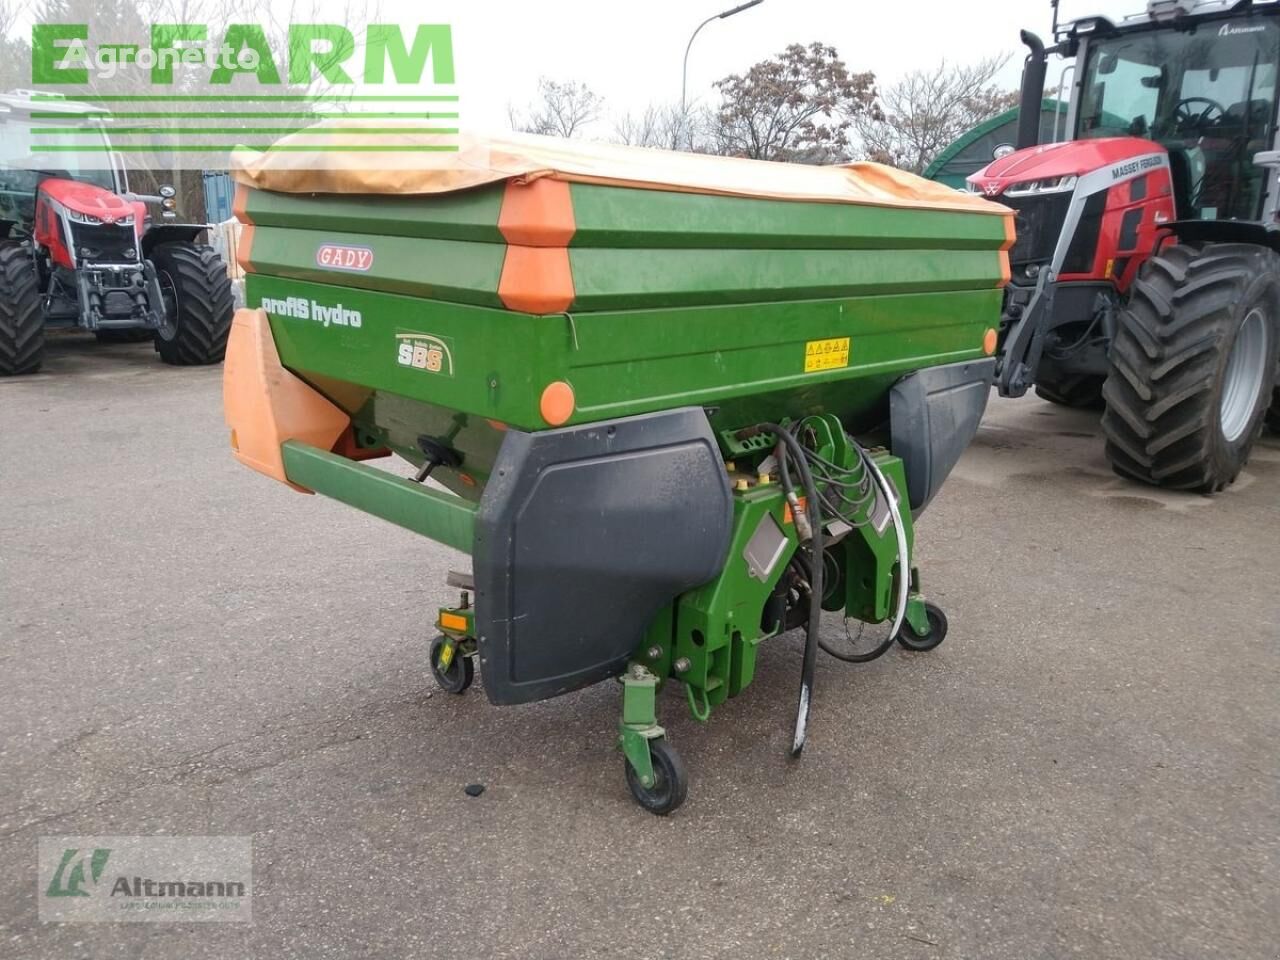 za-m 1500 profis hydro mounted fertilizer spreader